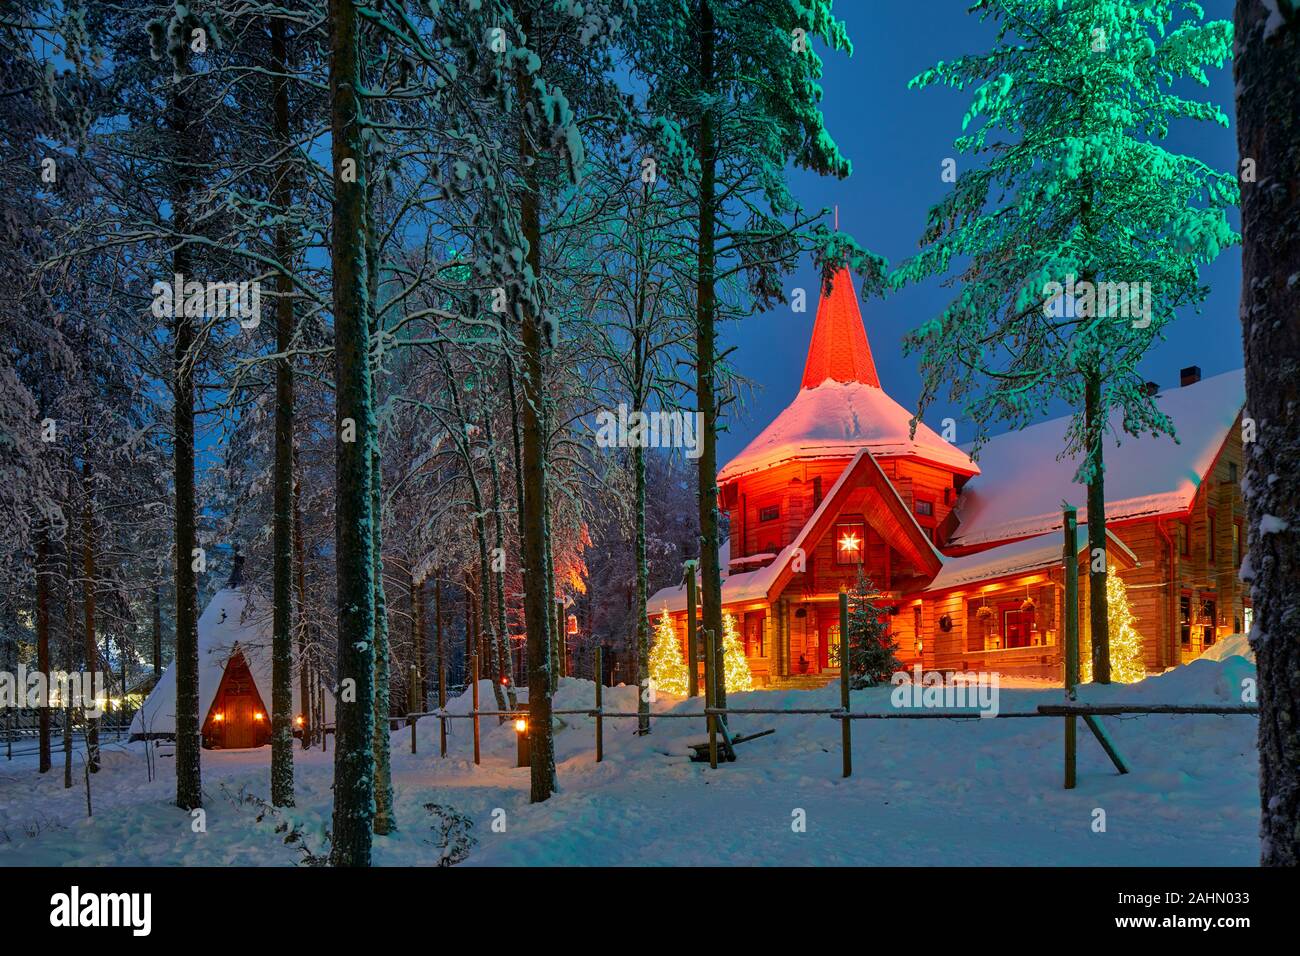 Finnische Rovaniemi eine Stadt in Finnland und der Region Lappland, Santa Claus Village Frau Claus Weihnachten Hütte im Wald bei Nacht Stockfoto